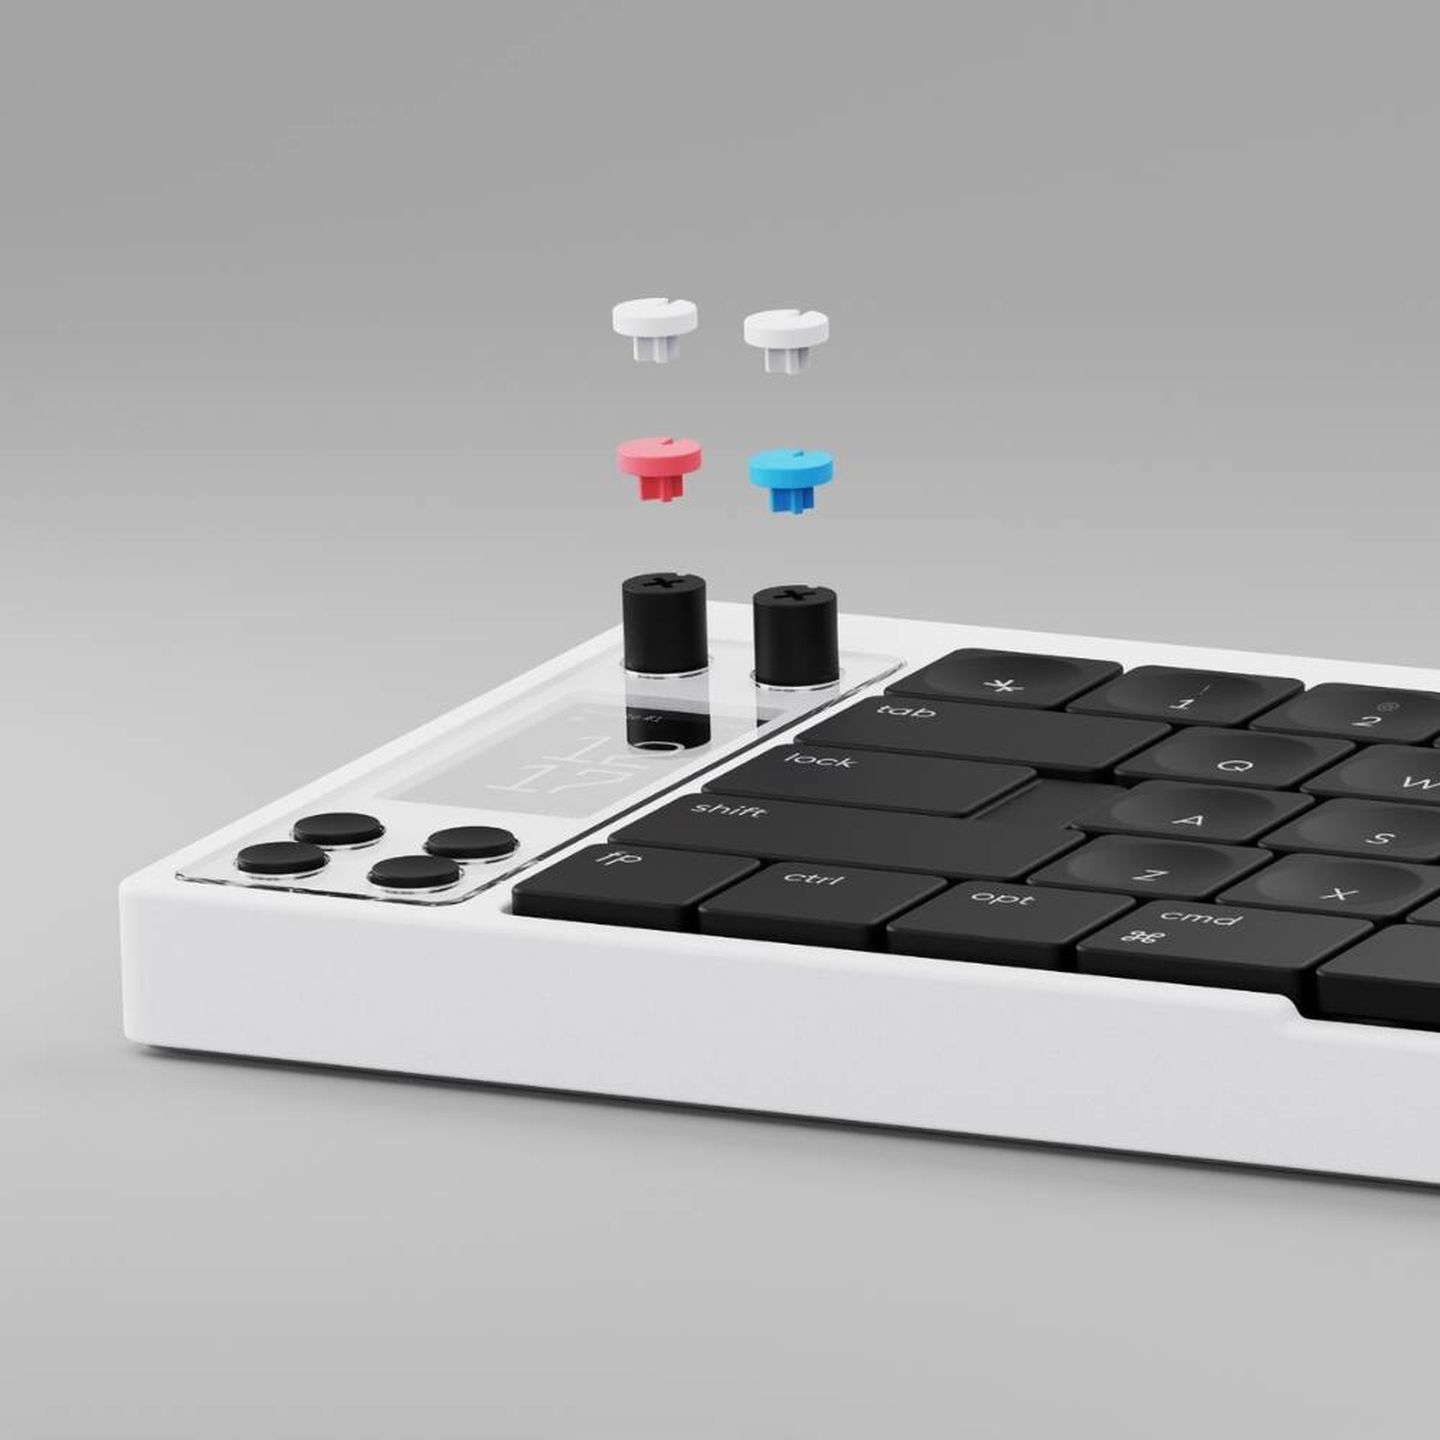 El teclado Nomad E tiene un sistema de teclas intercambiables. (Cortesía)